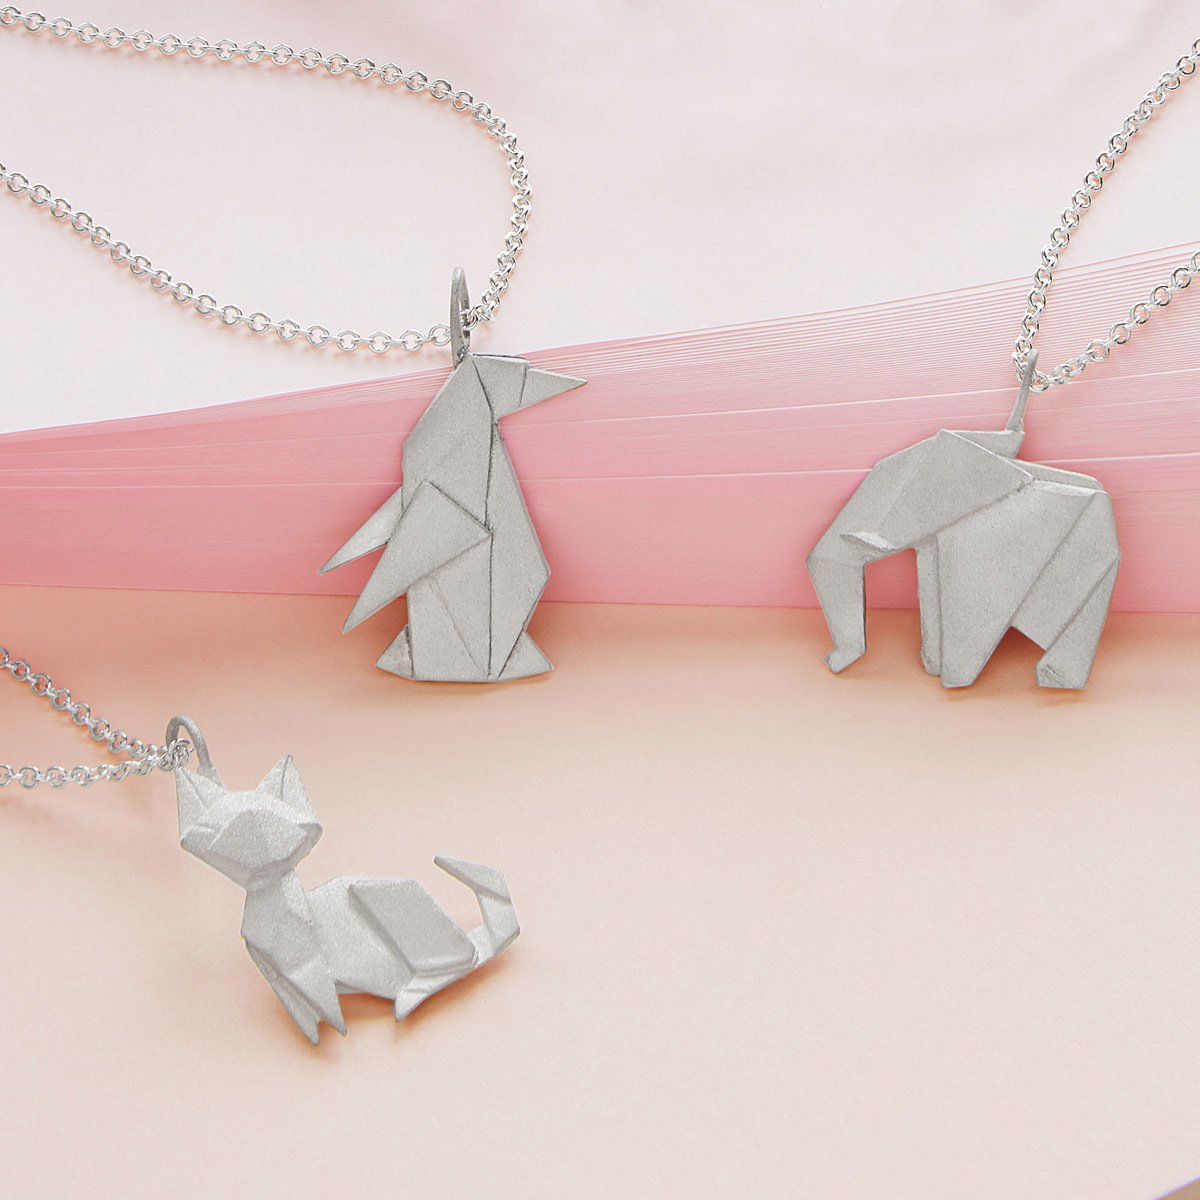 Origami Menagerie Necklaces Origami jewelry, Origami